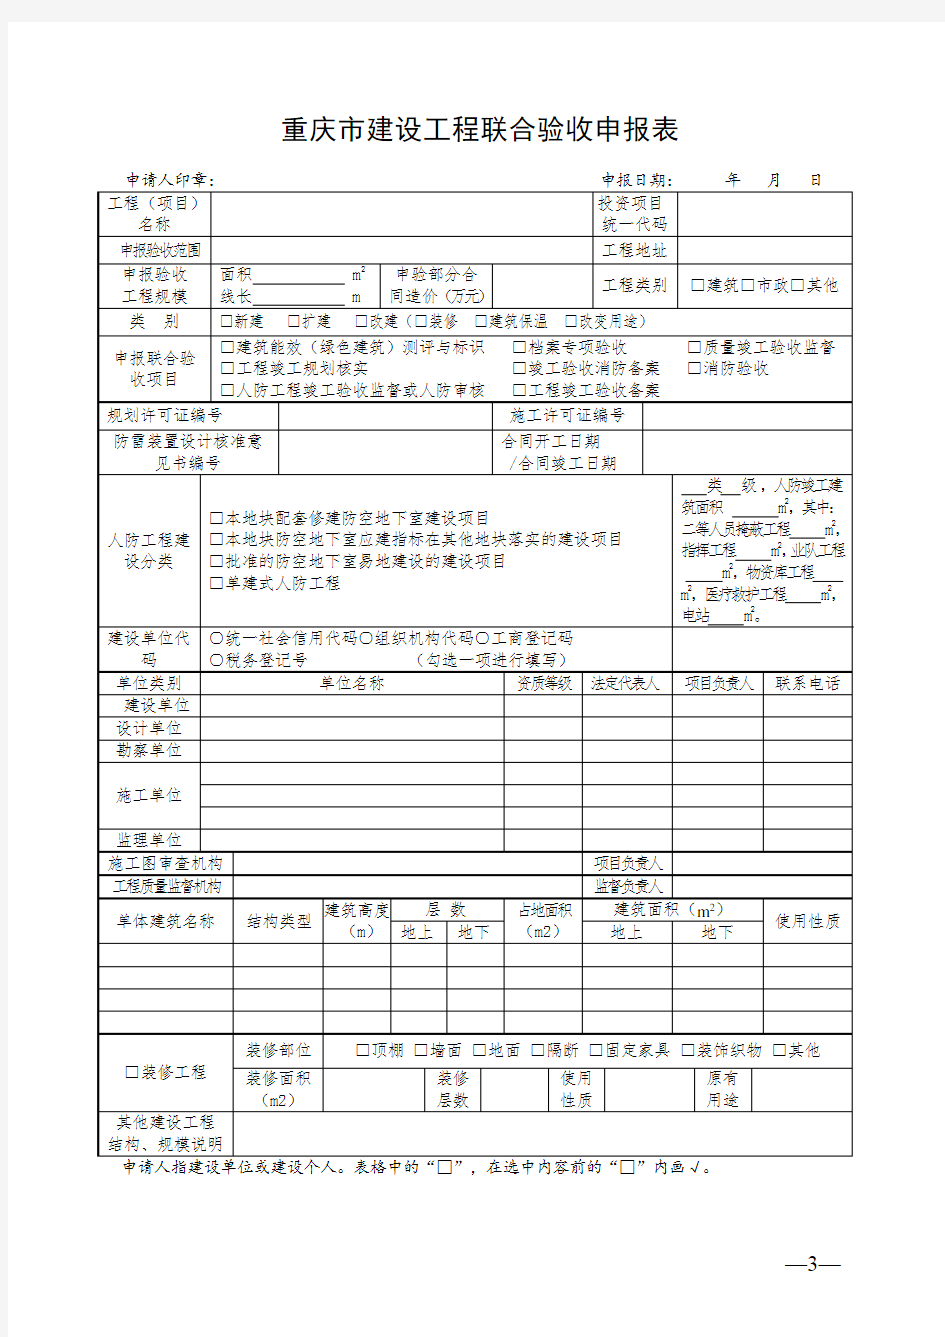 重庆市建设工程联合验收申报表